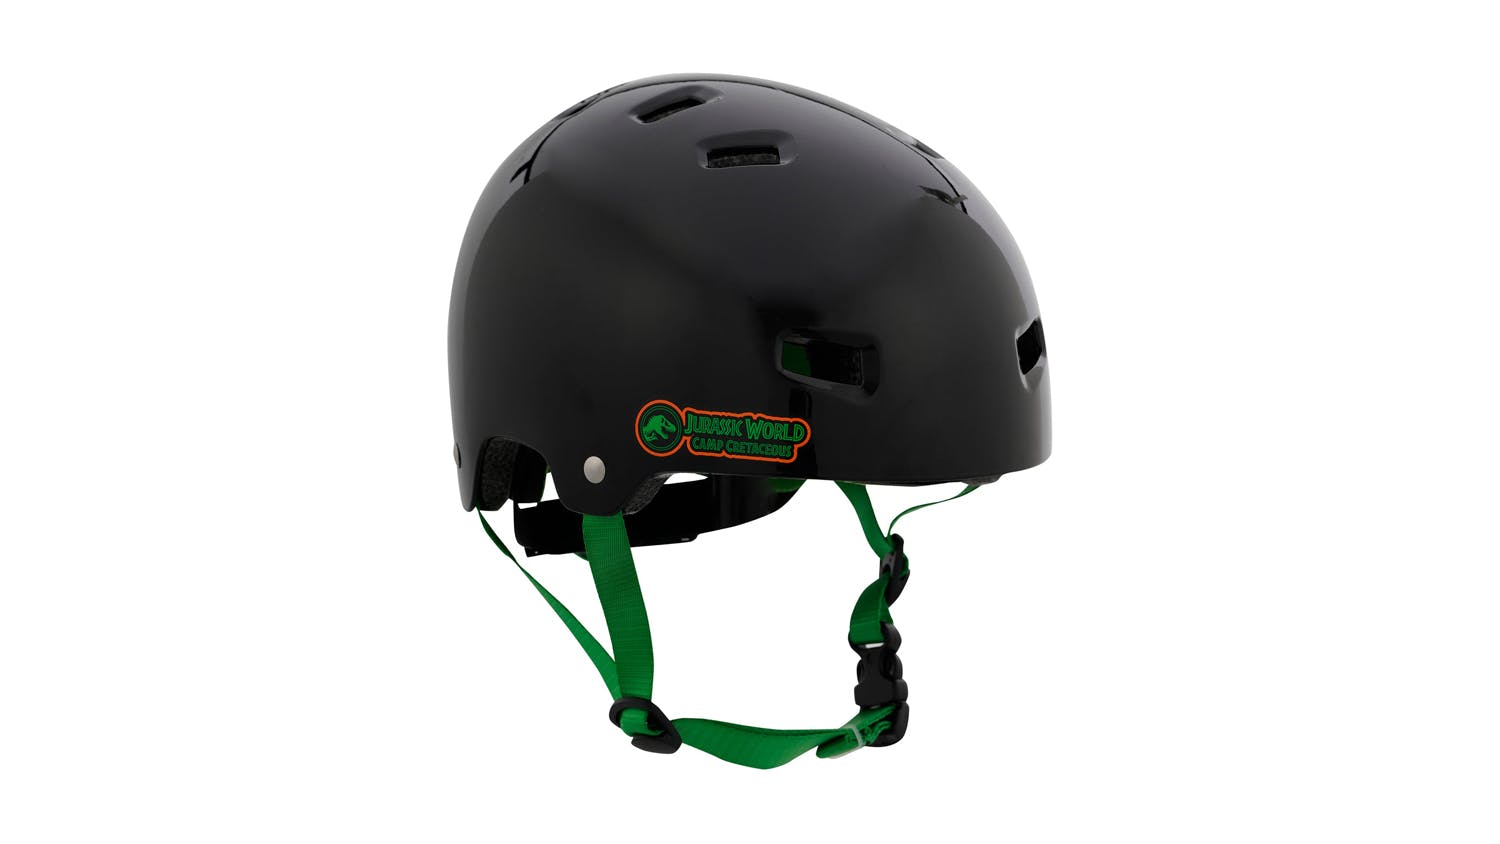 T35 Child Skate Helmet - Jurassic Park